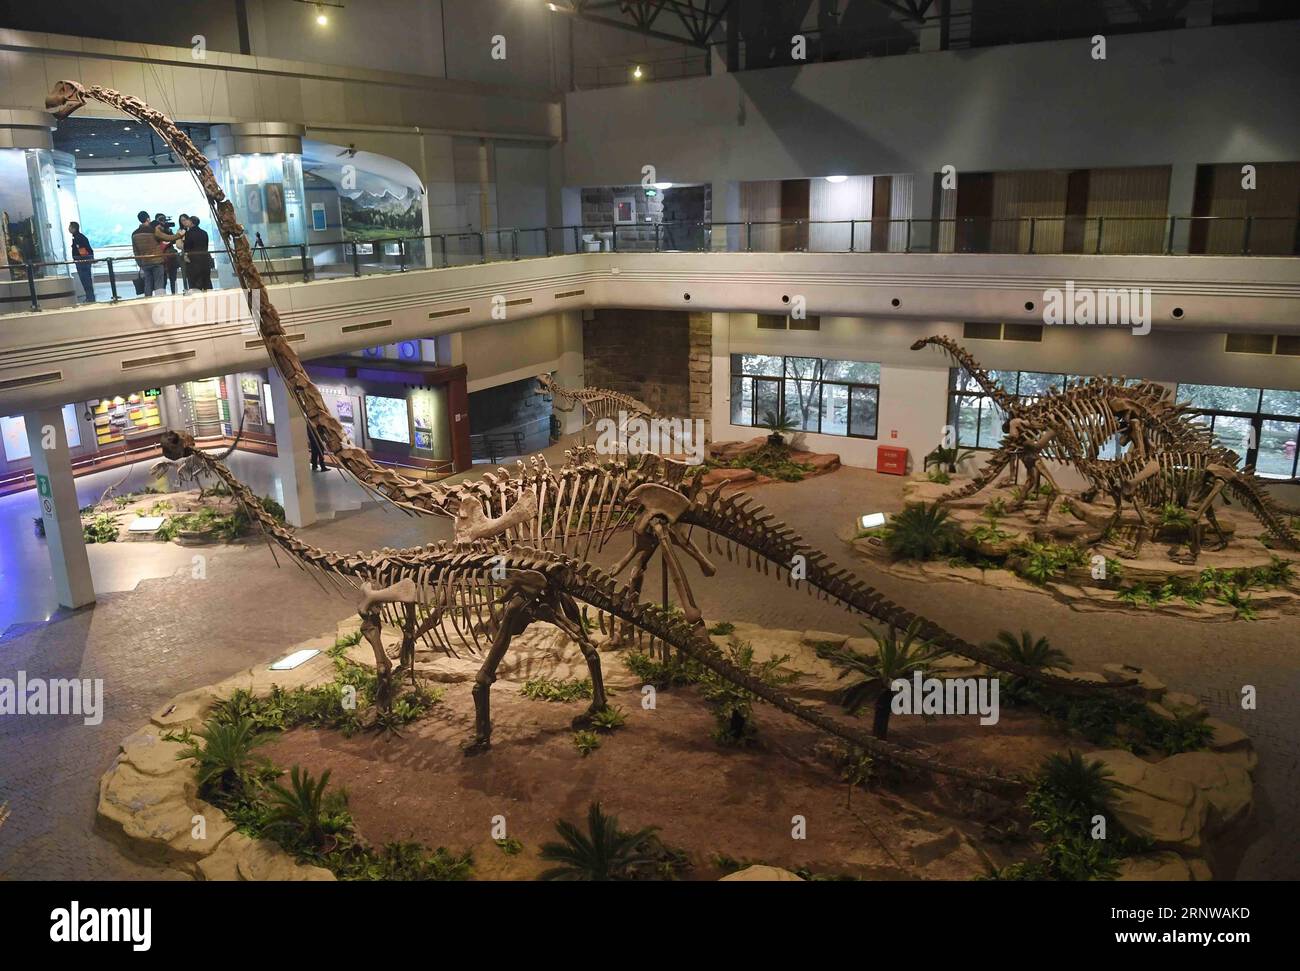 (171211) -- ZIGONG, 11. Dez. 2017 -- Foto aufgenommen am 7. Dez. 2017 zeigt die Ausstellungshalle des Zigong Dinosaurier Museums in Zigong, südwestchinesische Provinz Sichuan. Das Zigong Dinosaurier Museum wurde in der weltberühmten Dashanpu Dinosaurier Fauna erbaut und beherbergt eine Sammlung fossiler Exemplare, die fast alle bekannten Dinosaurier-Arten im Jura vor 205-135 Millionen Jahren umfassen. Es wurde vom American Global Geography Magazine als das beste Dinosaurier-Museum der Welt angesehen. ) (wf) CHINA-SICHUAN-FOSSIL-DINOSAURIER (CN) LiuxKun PUBLICATIONxNOTxINxCHN Stockfoto